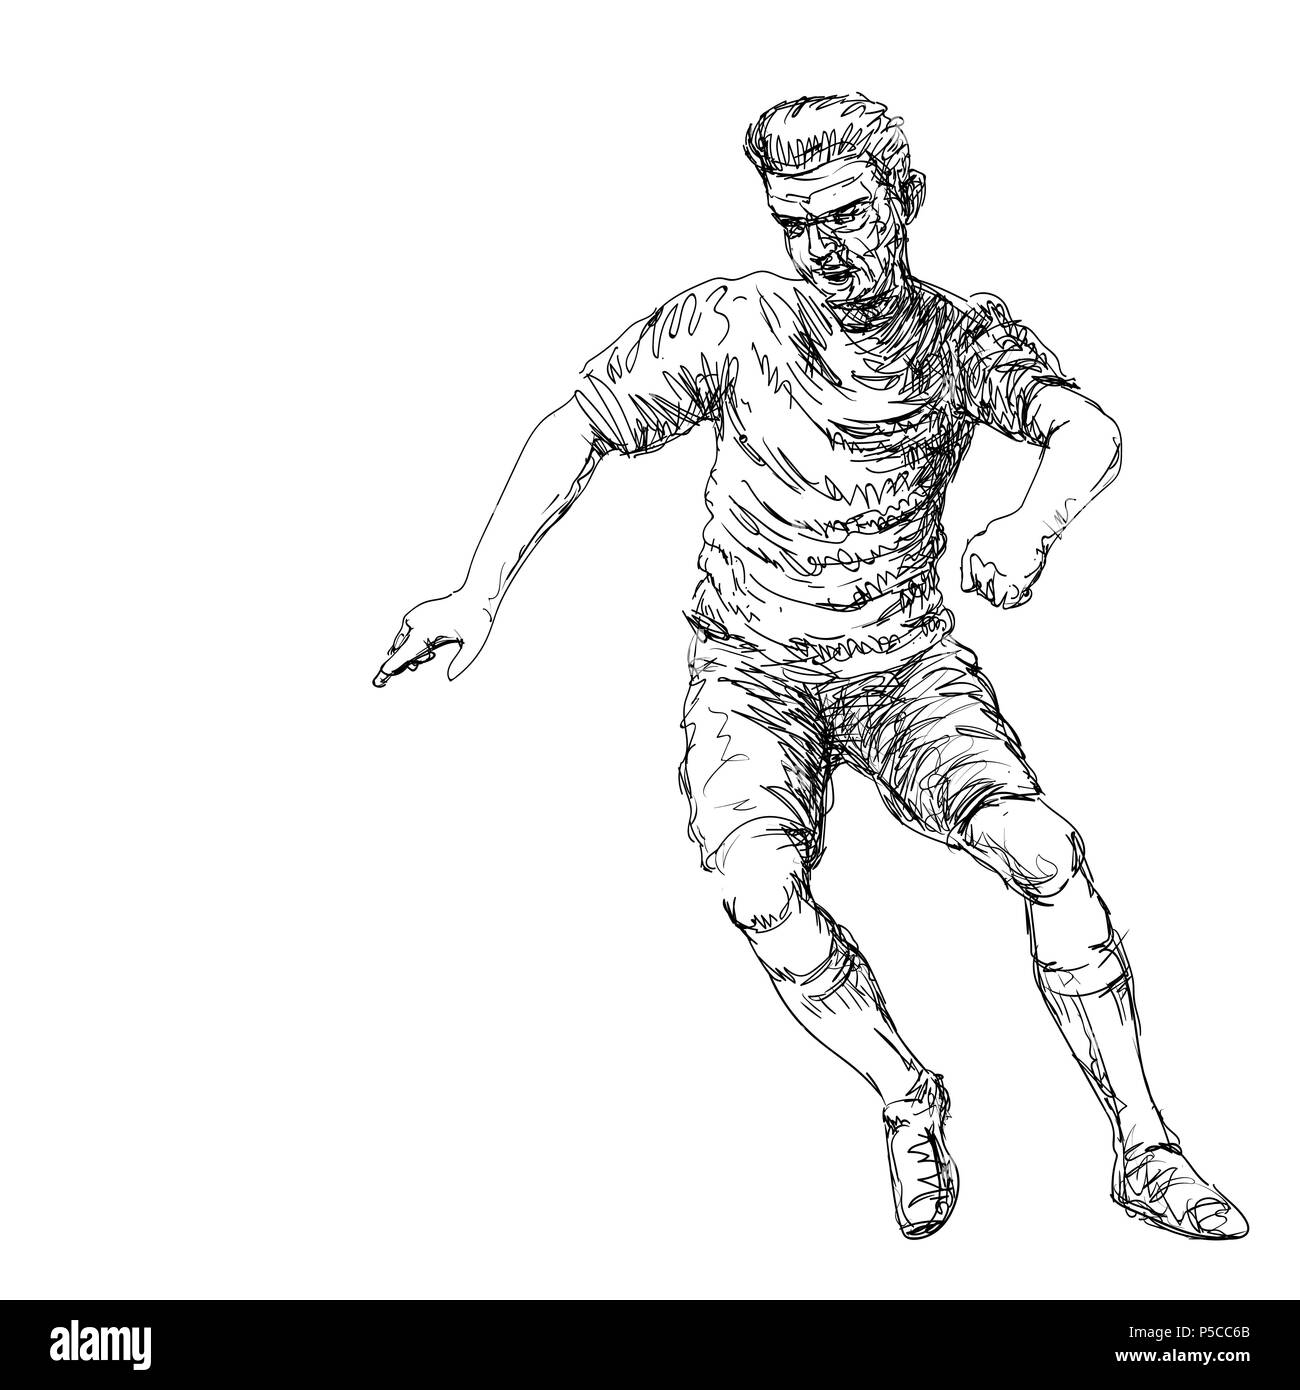 Dibujo a mano de Fútbol Jugador pateando una pelota - Vector Ilustración dibujada a mano. Ilustración del Vector